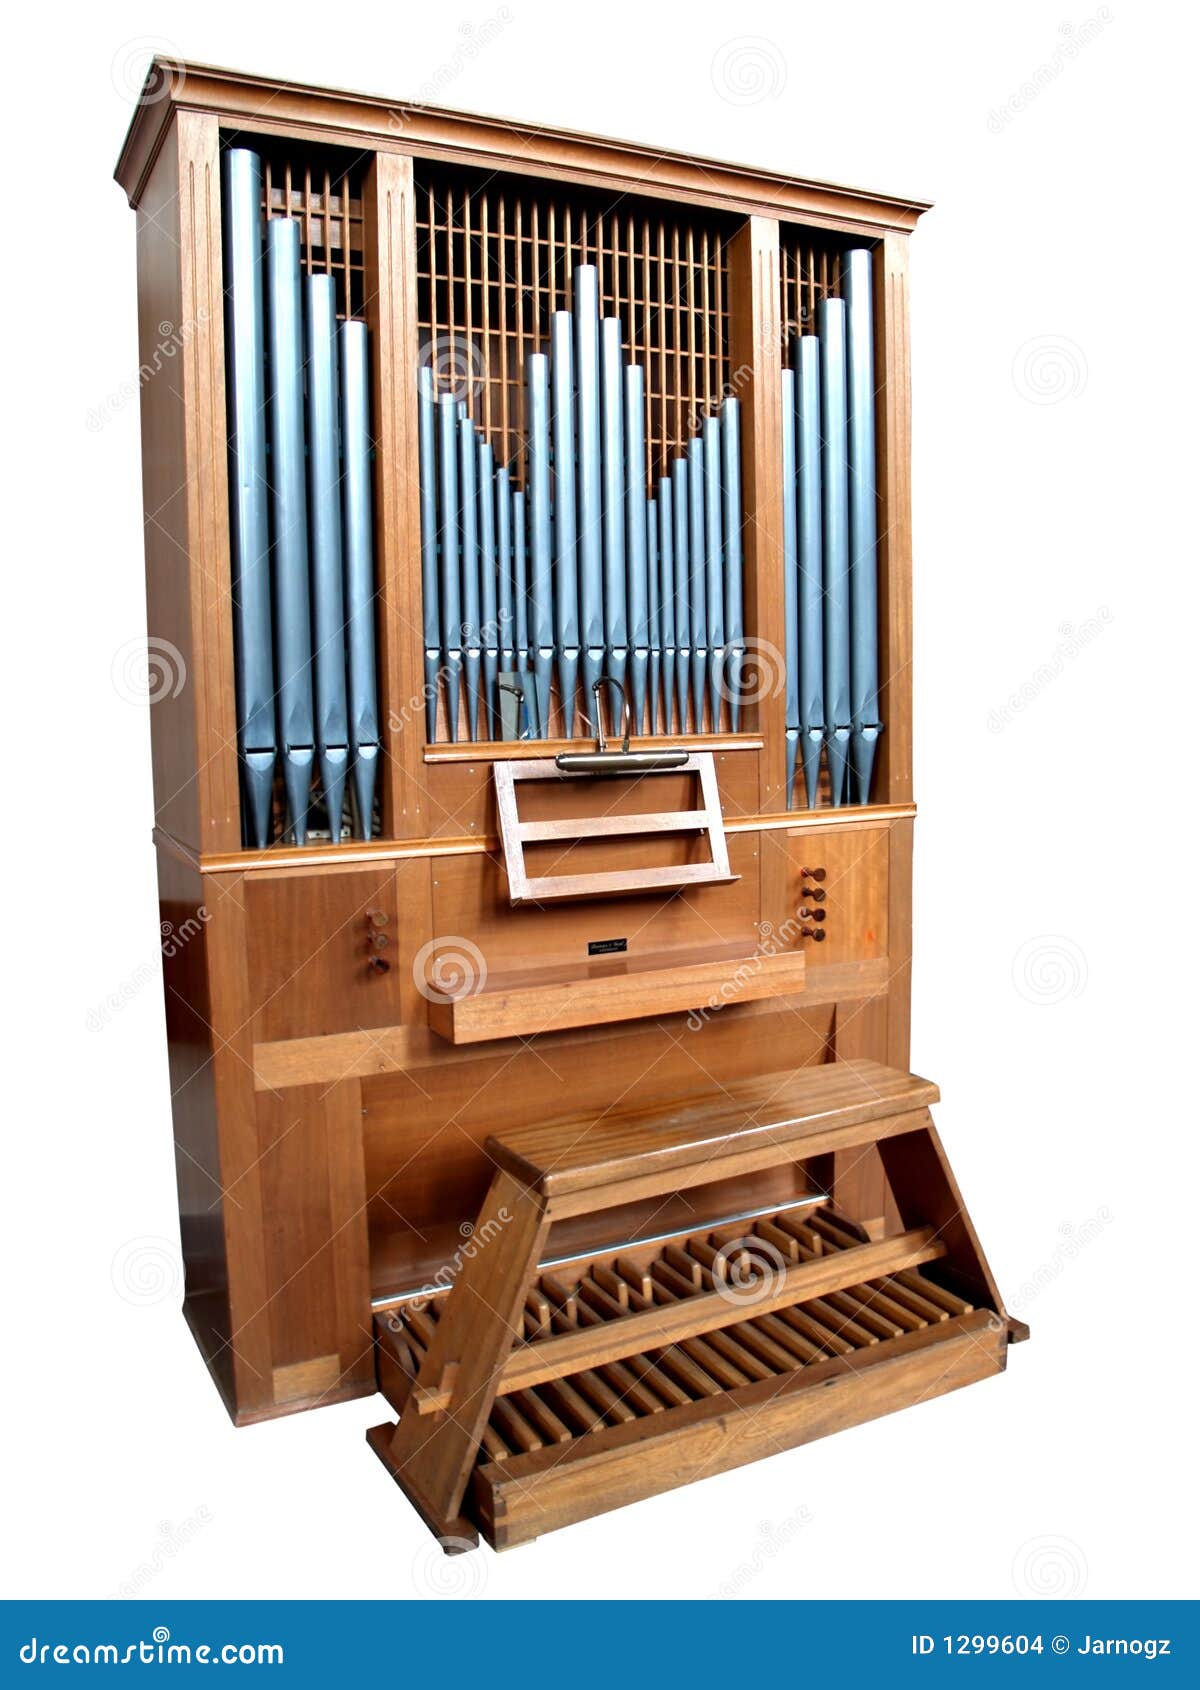  church organ